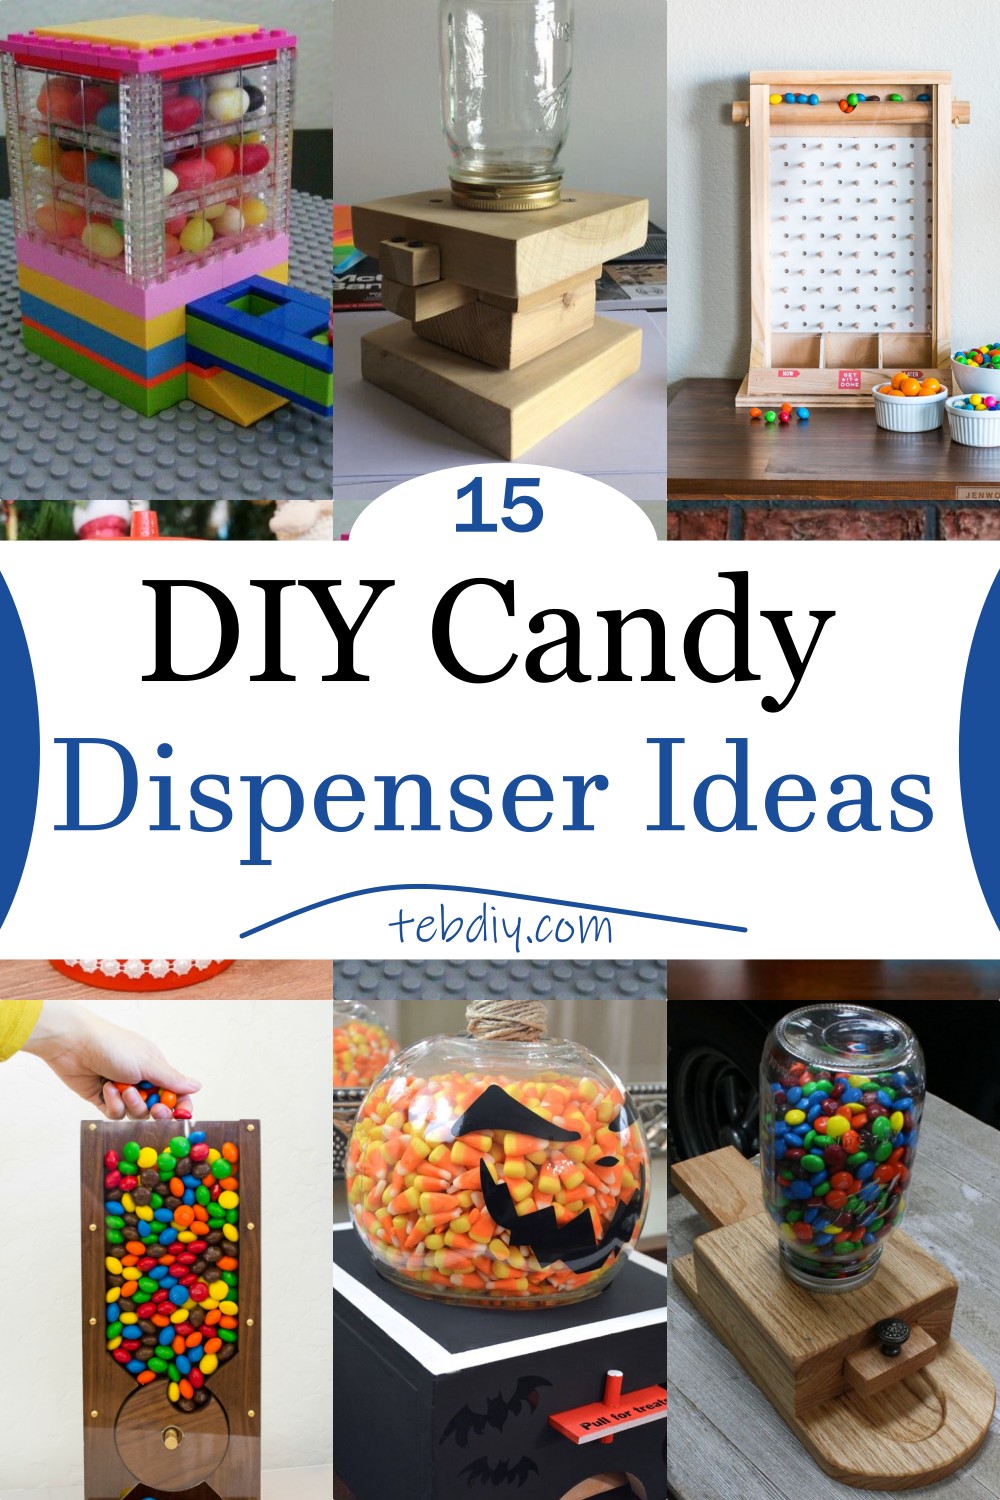 15 DIY Candy Dispenser Ideas